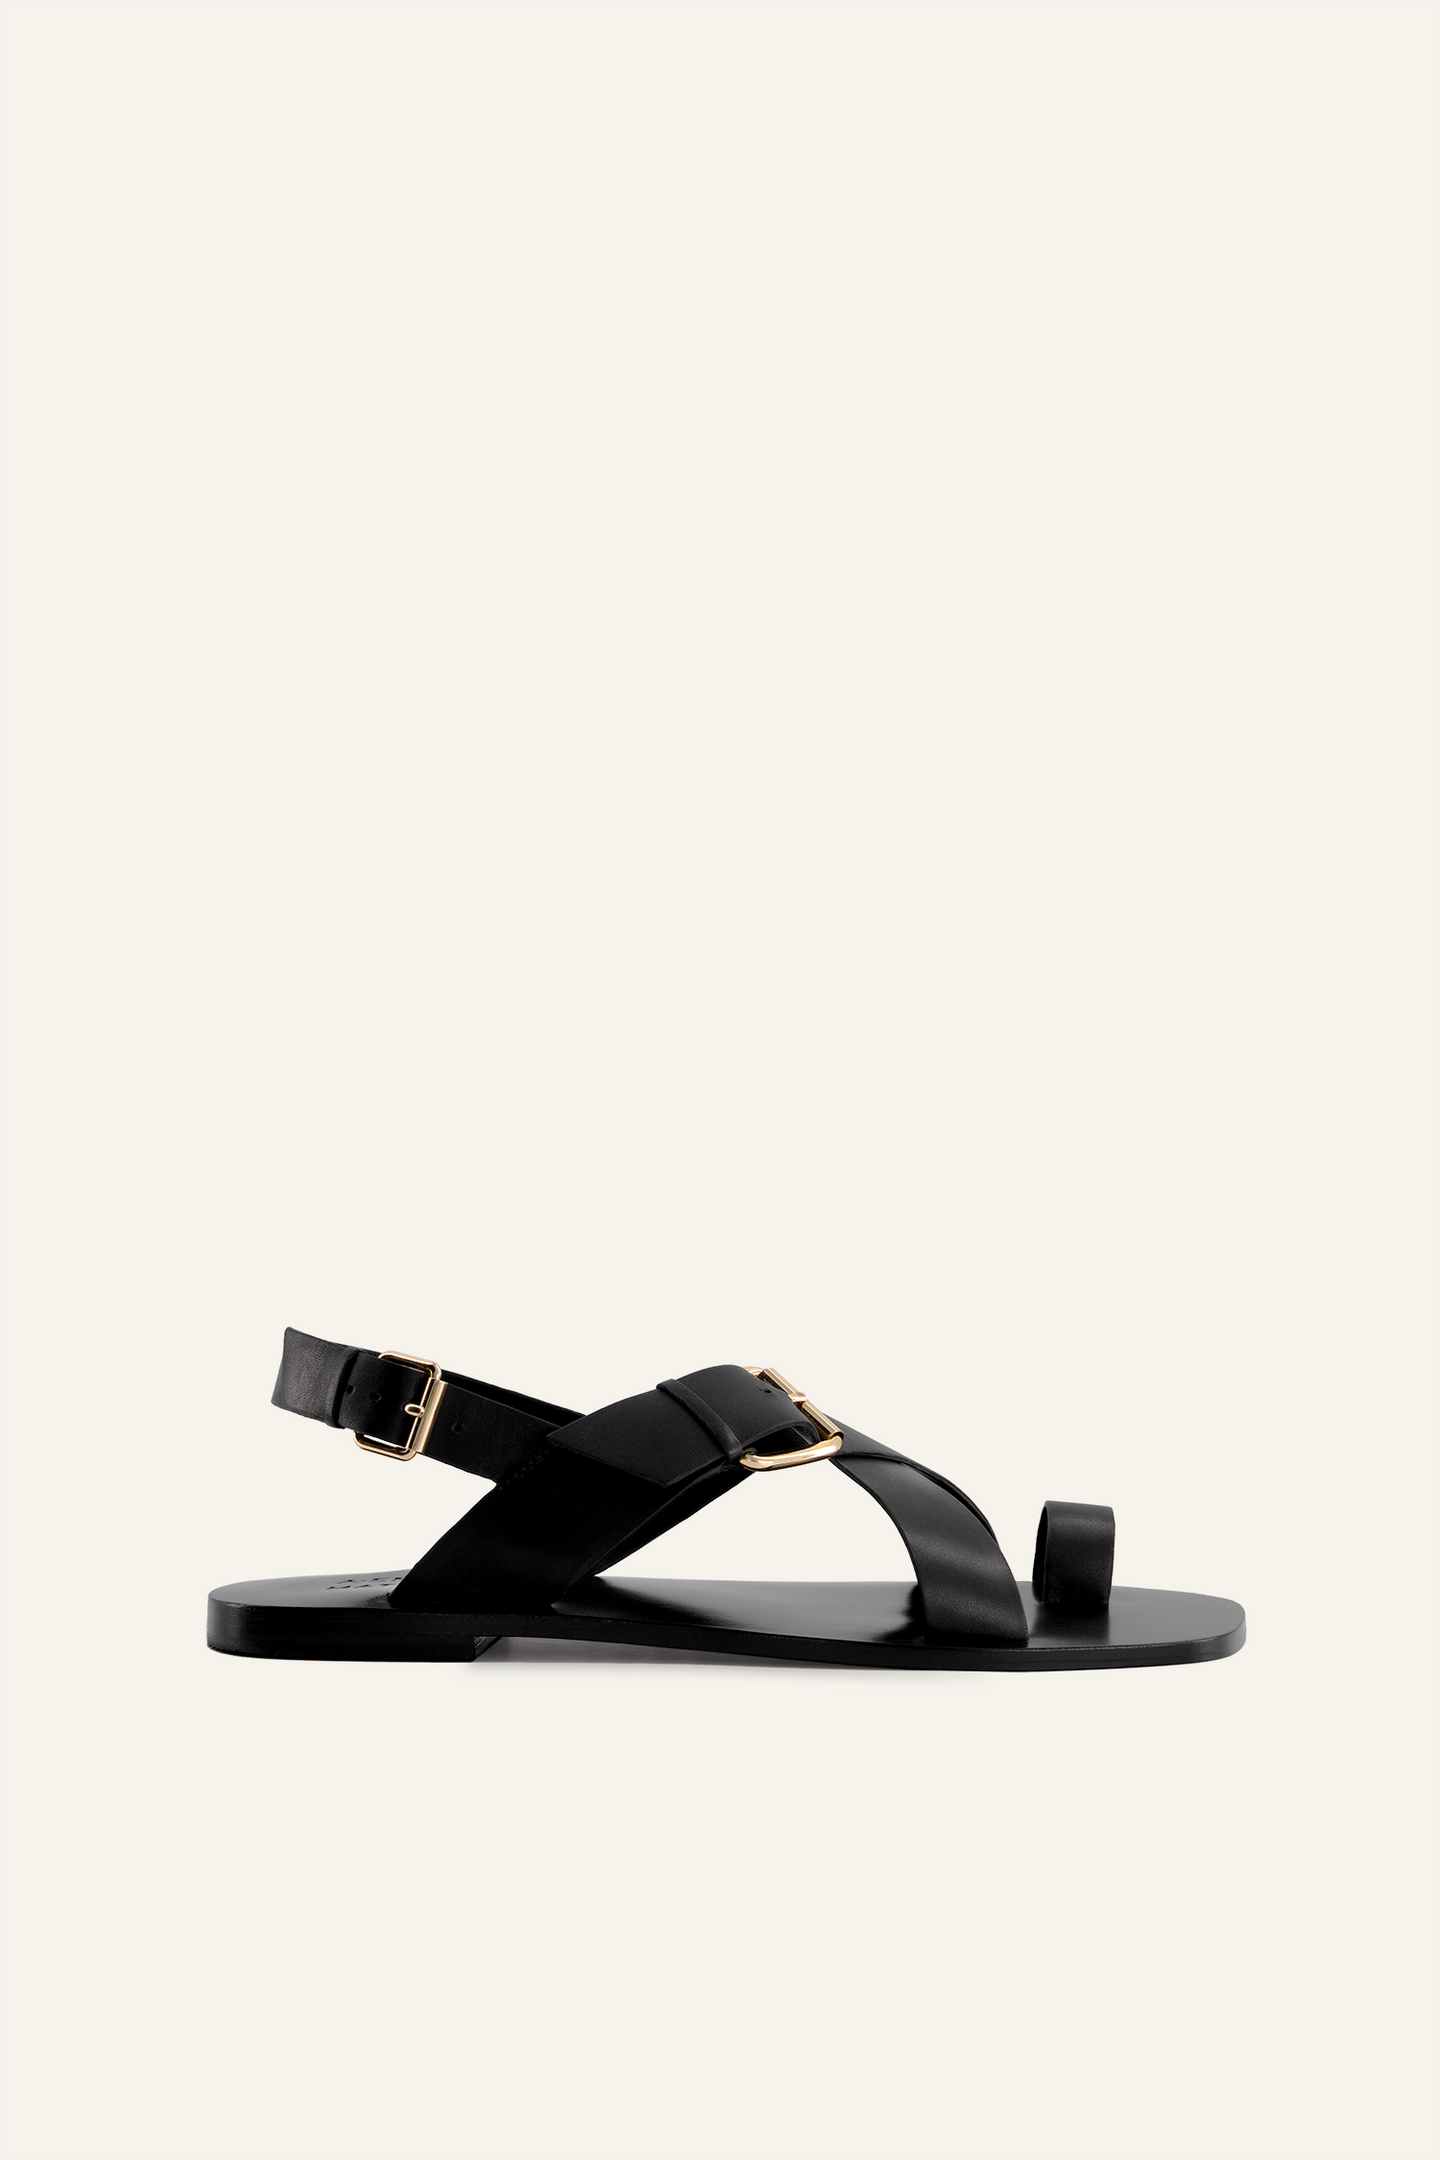 Zahara Sandal - Black - Matteau